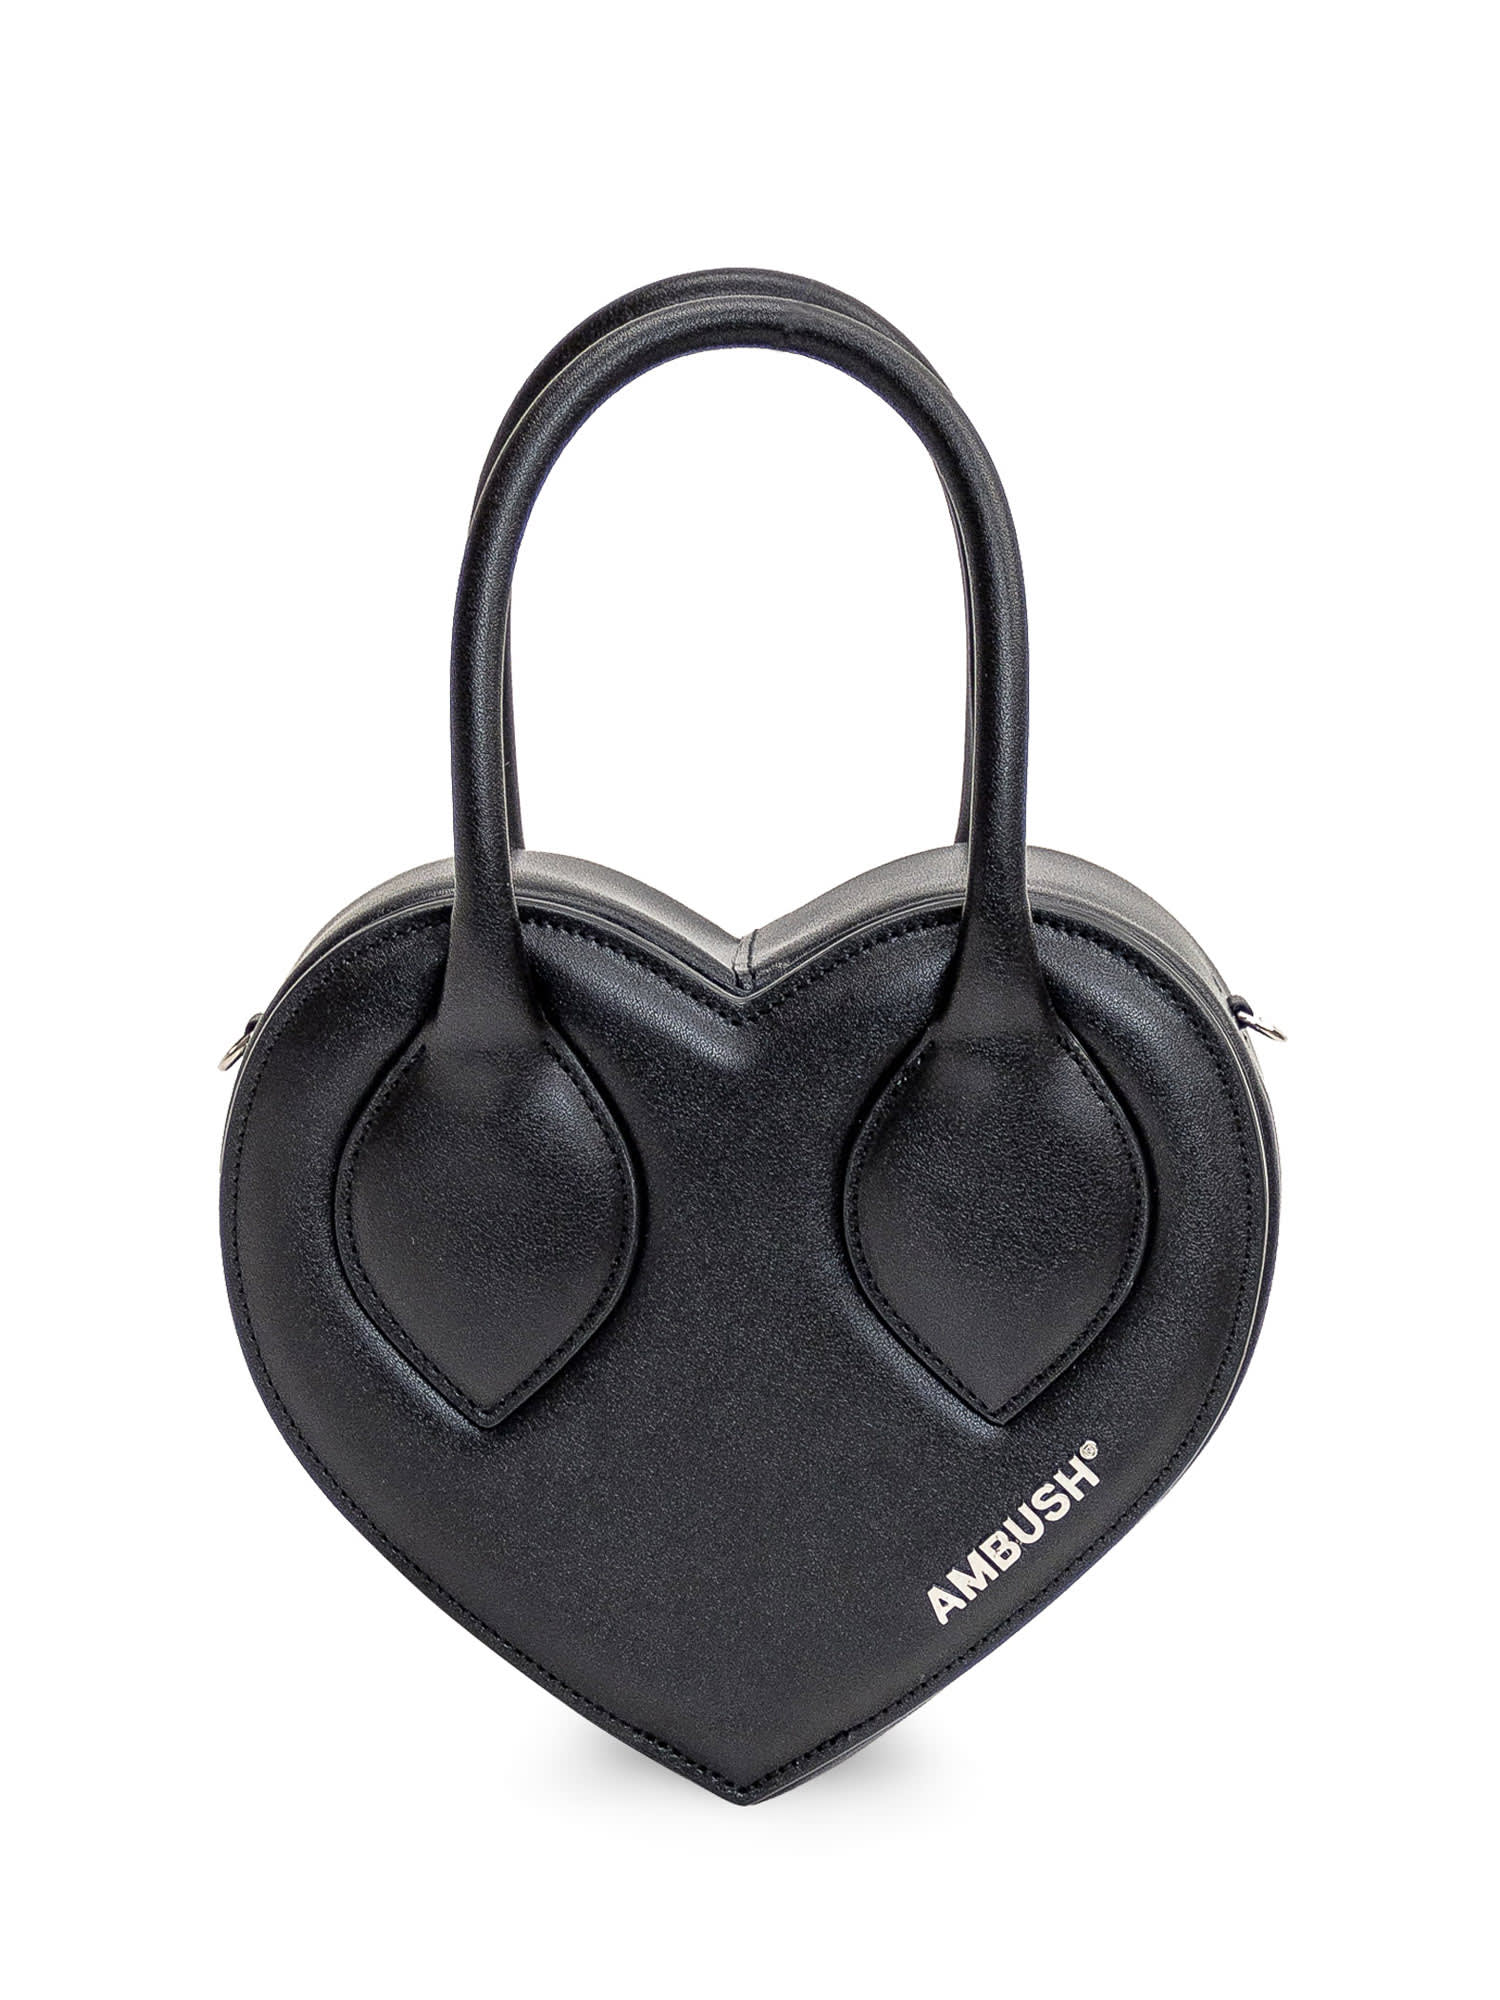 AMBUSH Heart Handle Handbag